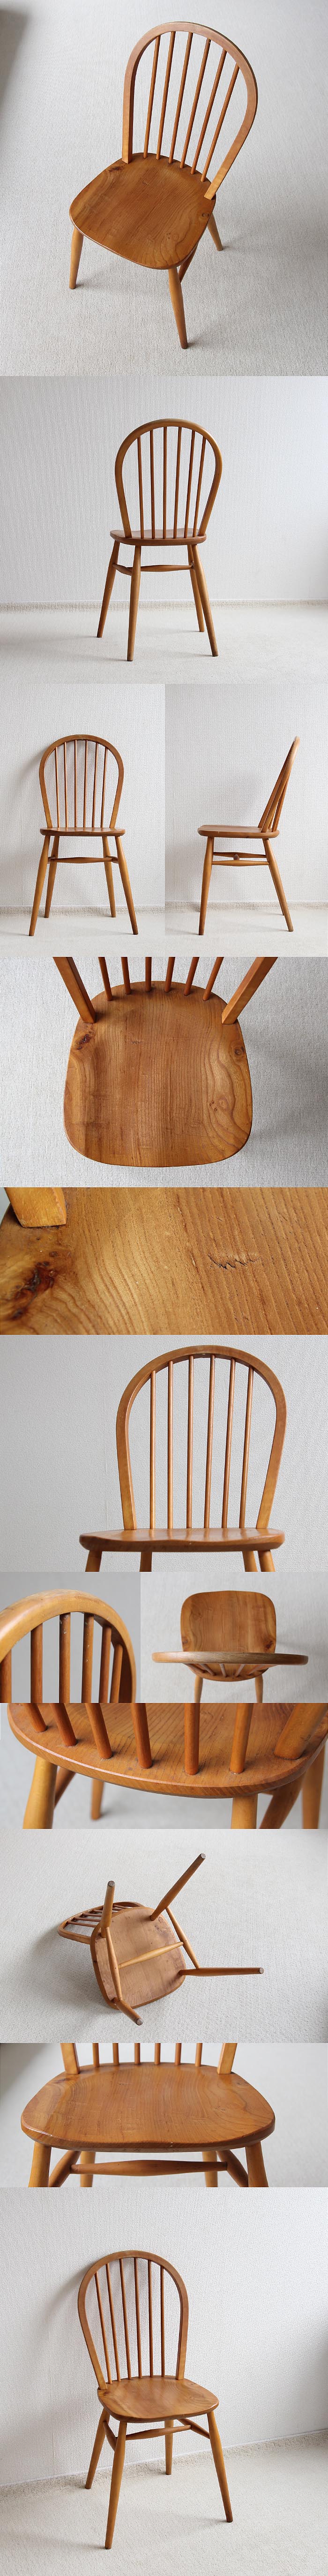 イギリス ヴィンテージ キッチンチェア 英国 木製椅子 家具「フープバックチェア」V-405